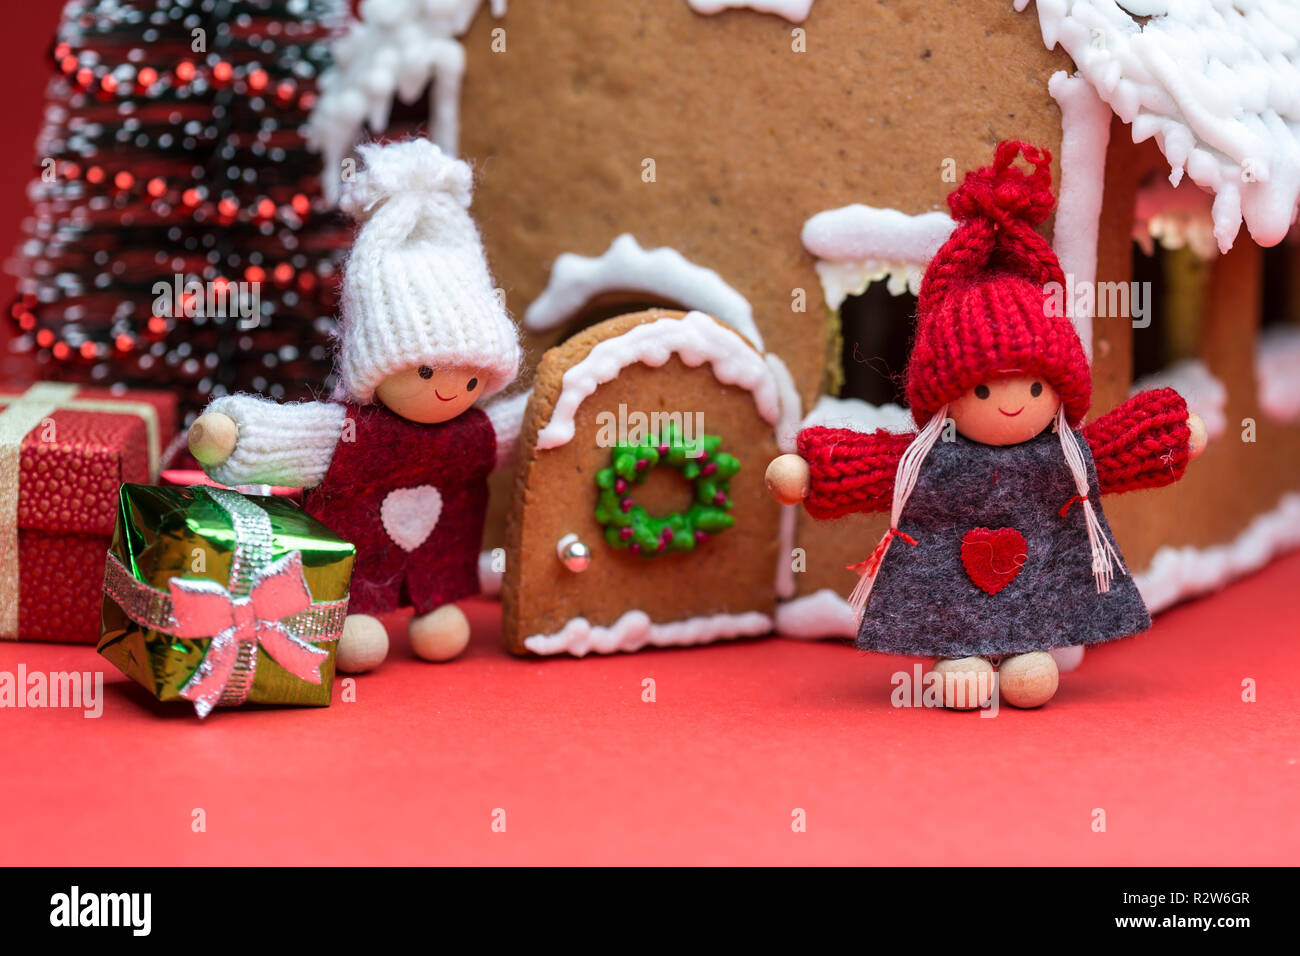 Maison avec des poupées et des biscuits de Noël sur fond rouge Banque D'Images